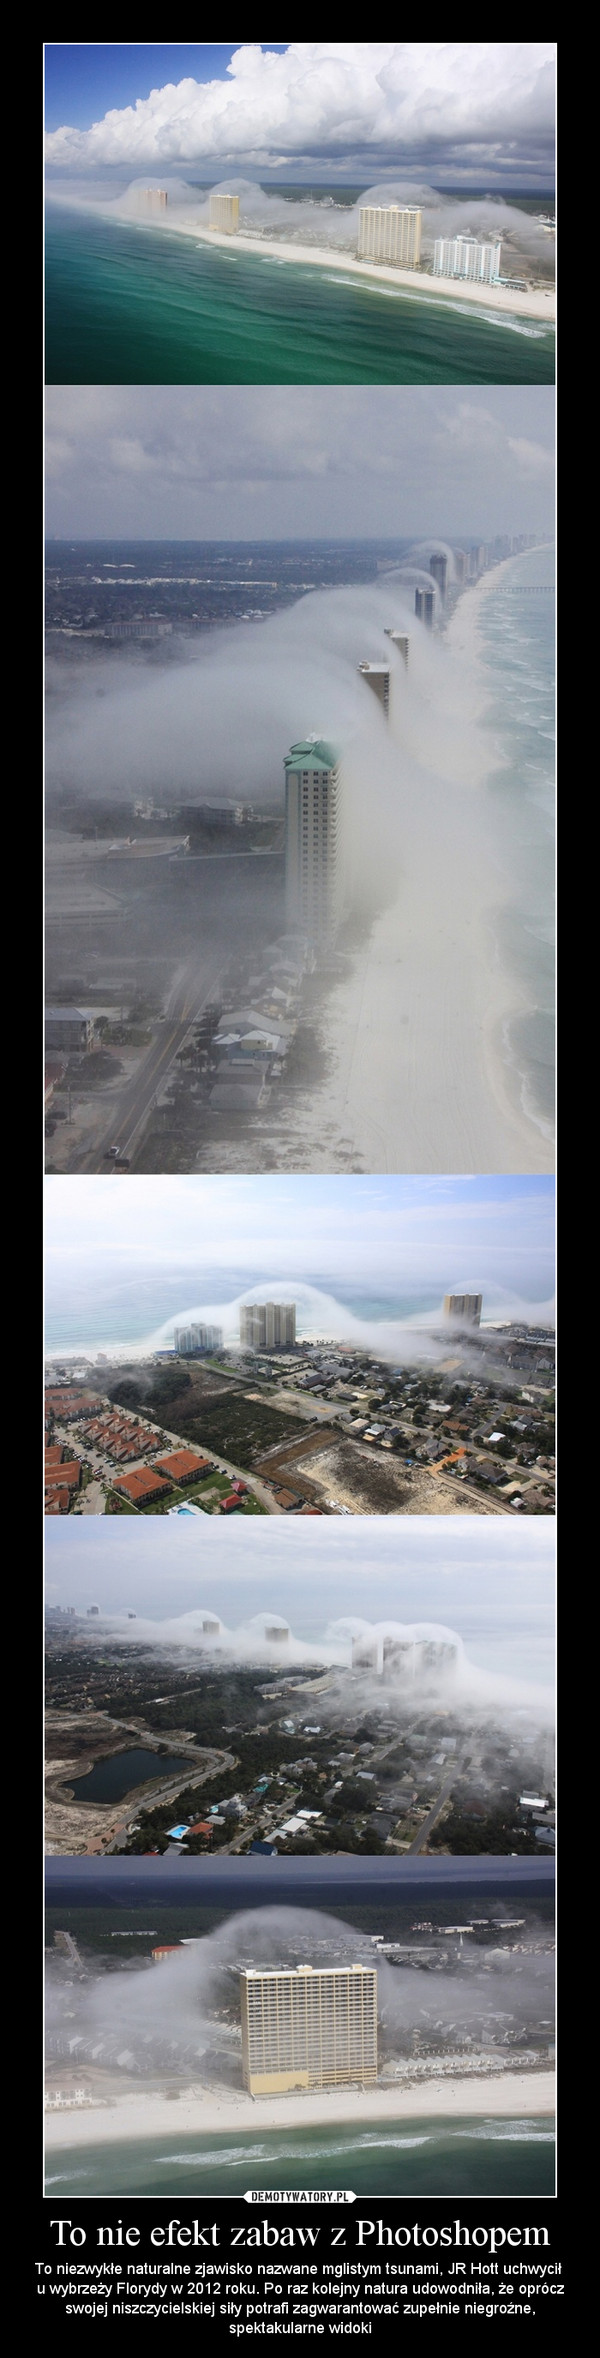 To nie efekt zabaw z Photoshopem – To niezwykłe naturalne zjawisko nazwane mglistym tsunami, JR Hott uchwycił u wybrzeży Florydy w 2012 roku. Po raz kolejny natura udowodniła, że oprócz swojej niszczycielskiej siły potrafi zagwarantować zupełnie niegroźne, spektakularne widoki 